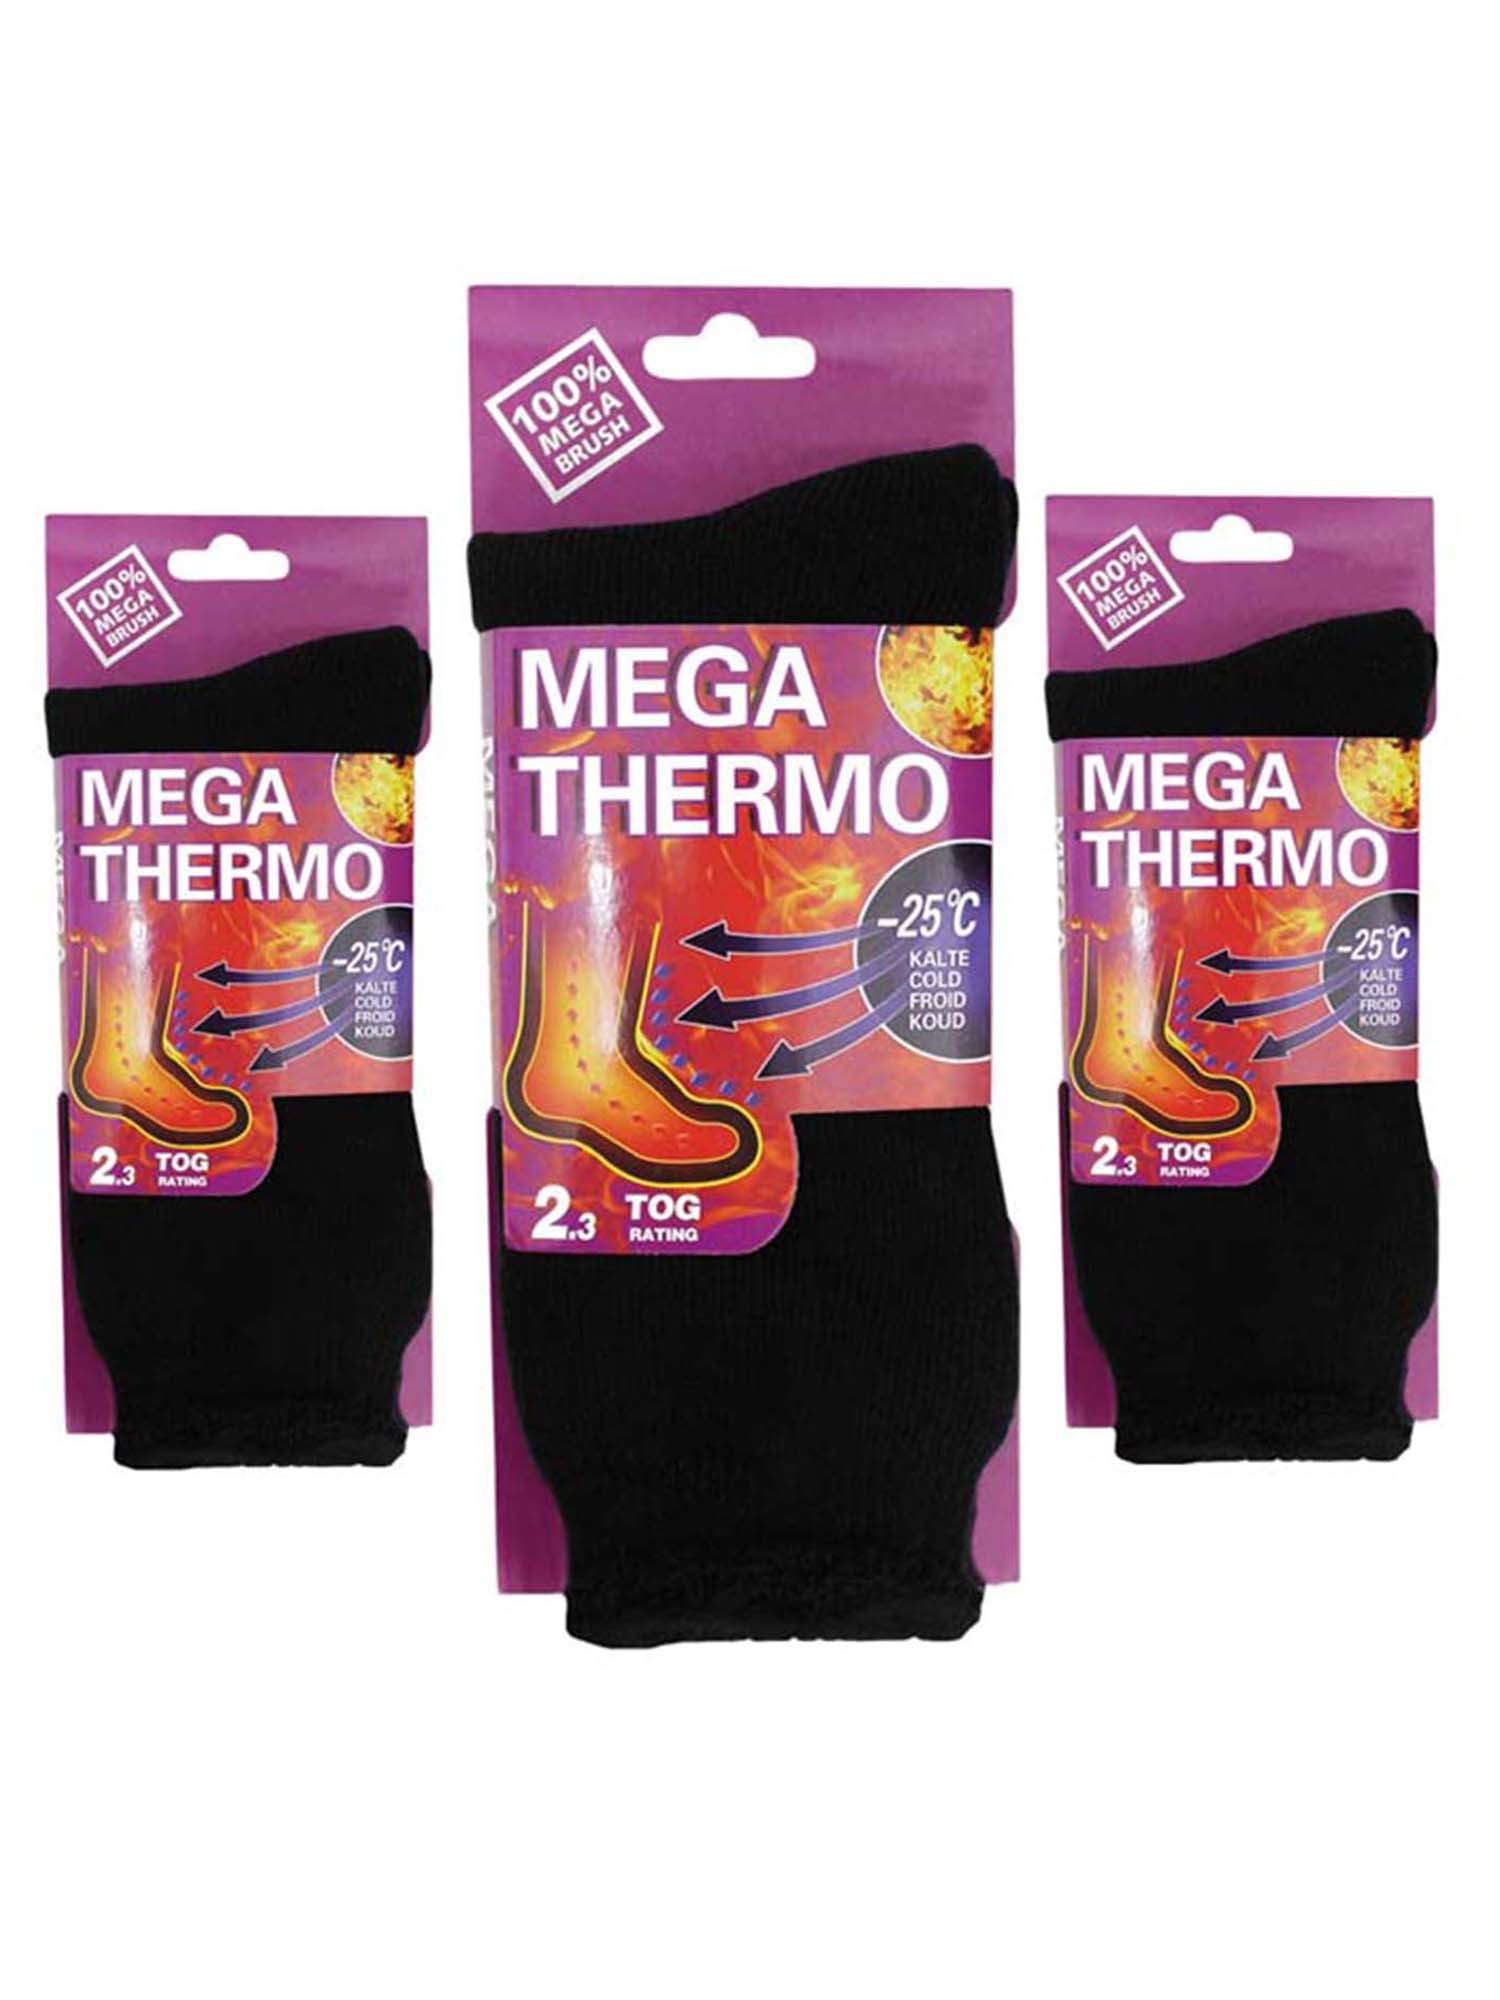 Mega Thermo Socks 3 Pair Black Heavy Duty Warm  Size 10-15 Free Ship 